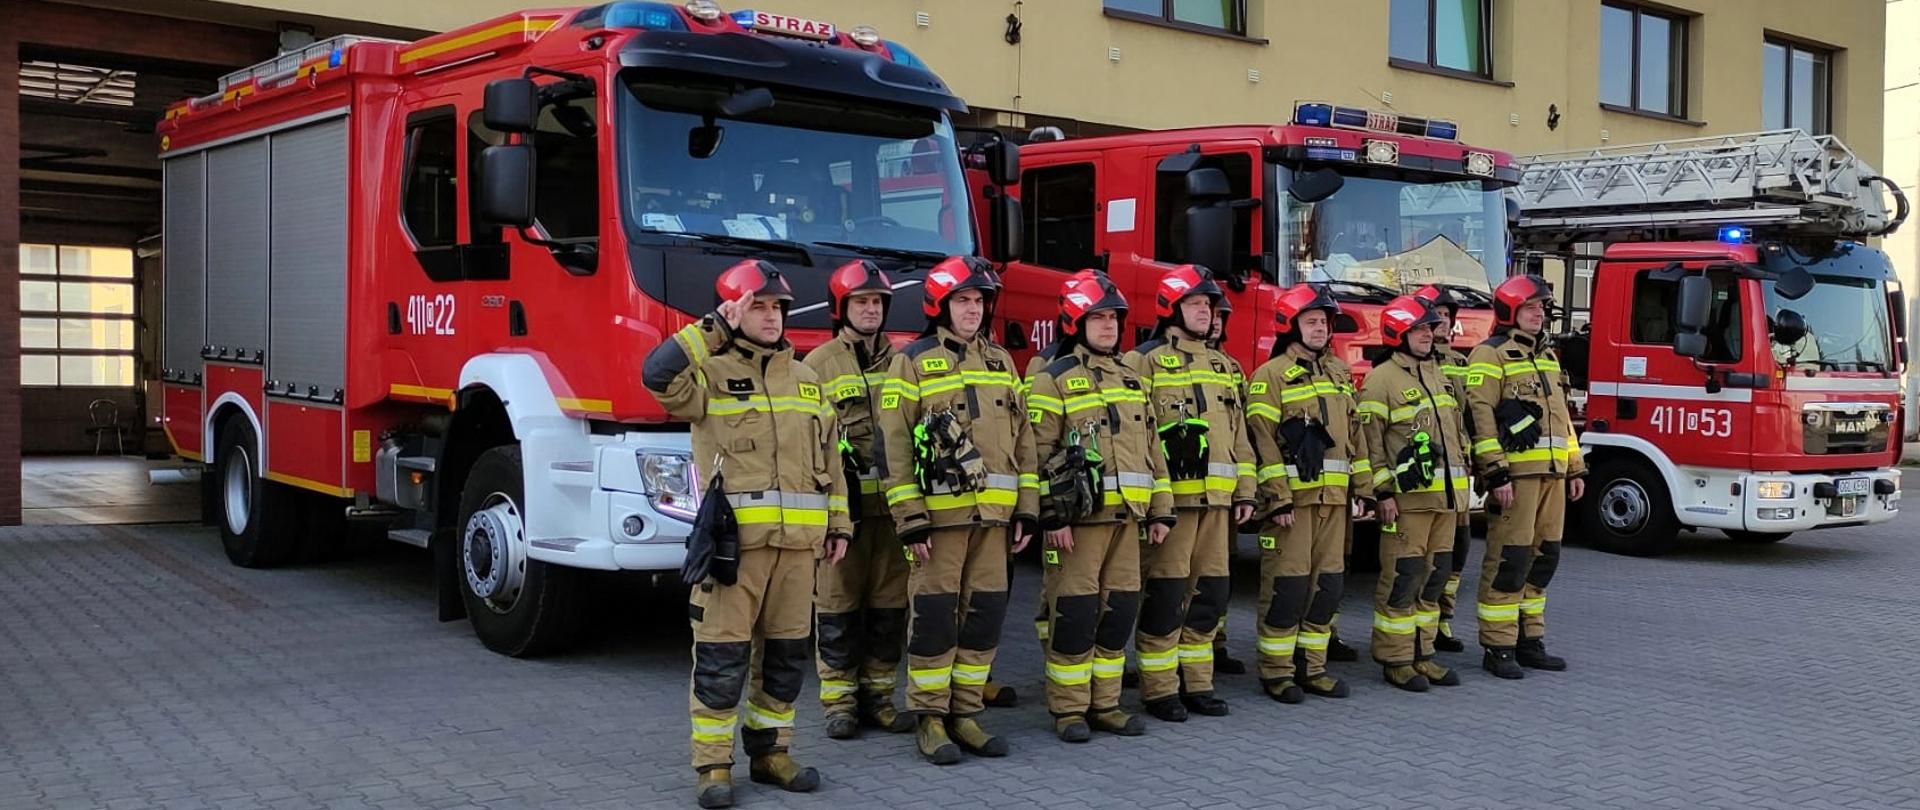 Zdjęcie przedstawia funkcjonariuszy Jednostki Ratowniczo-Gaśniczej Komendy Powiatowej Państwowej Straży Pożarnej w Głubczycach w umundurowaniu specjalnym i hełmach pożarniczych stojących w dwuszeregu przed pojazdami pożarniczymi koloru czerwonego z włączoną sygnalizacją świetlną. W tle widoczny jest budynek strażnicy. Strażacy oddają hołd poległym strażakom w Ukrainie.